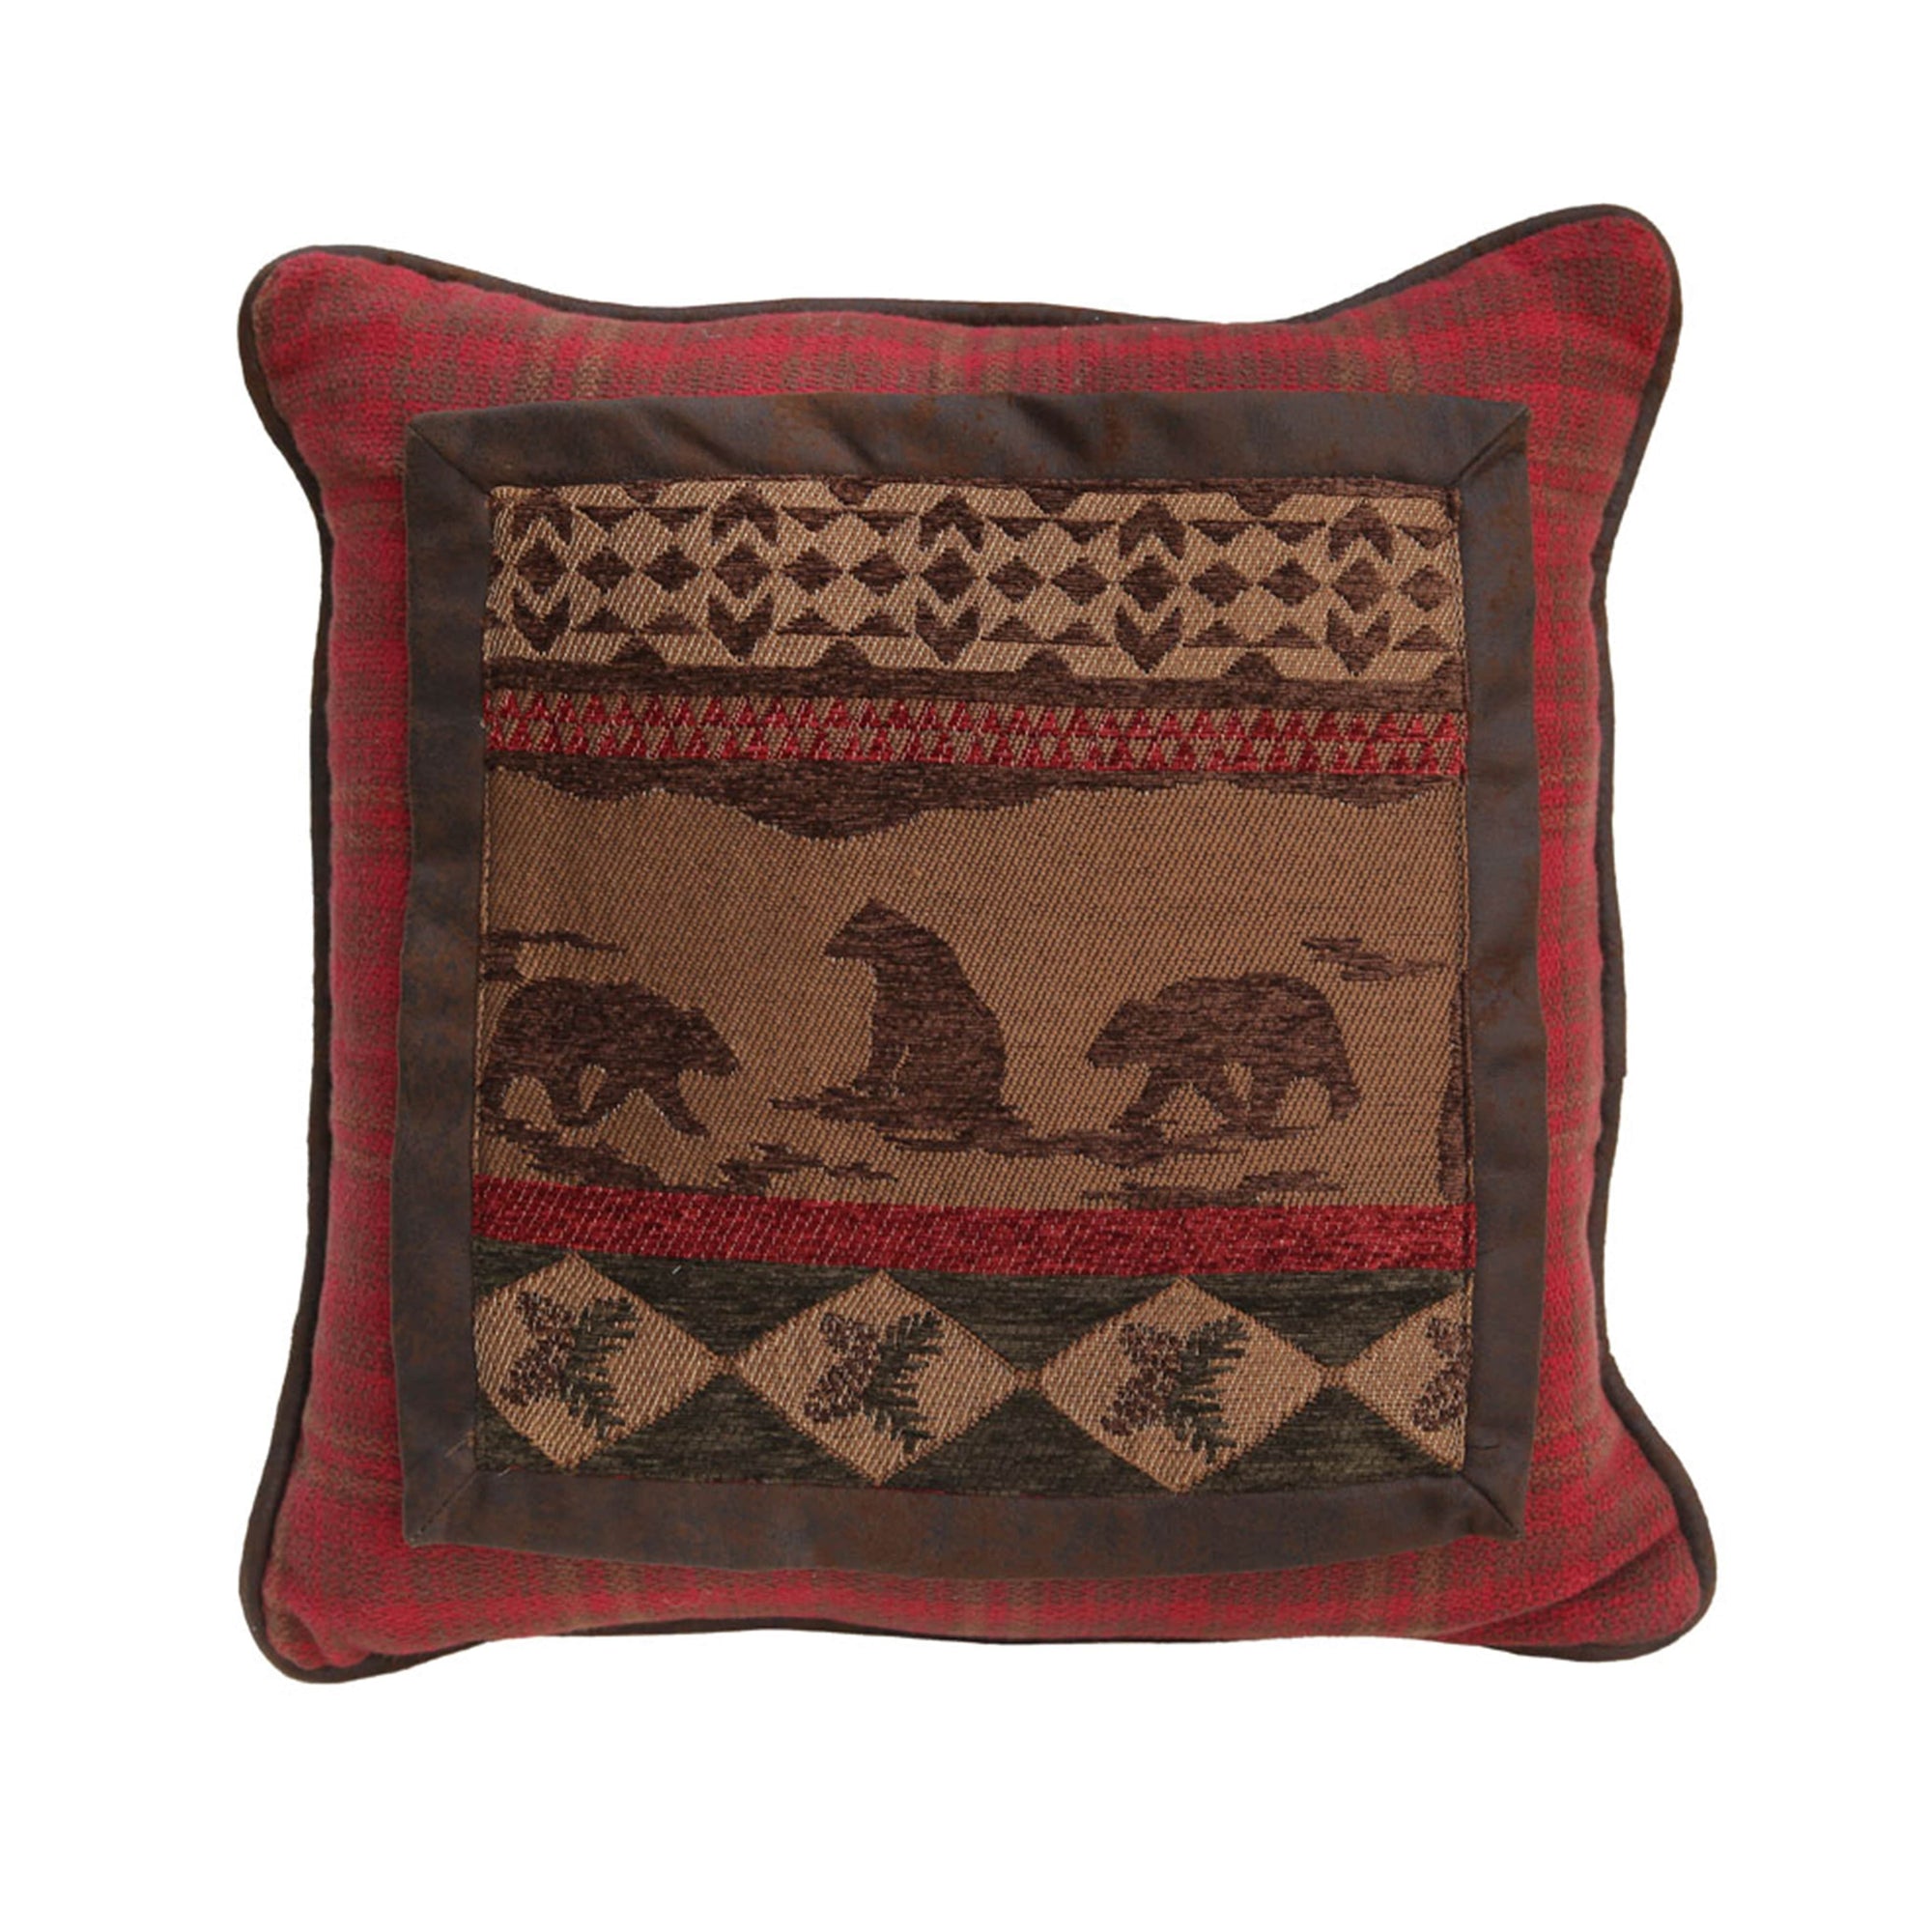 Cascade Lodge Bear Throw Pillow, Red Plaid, 18x18 Pillow